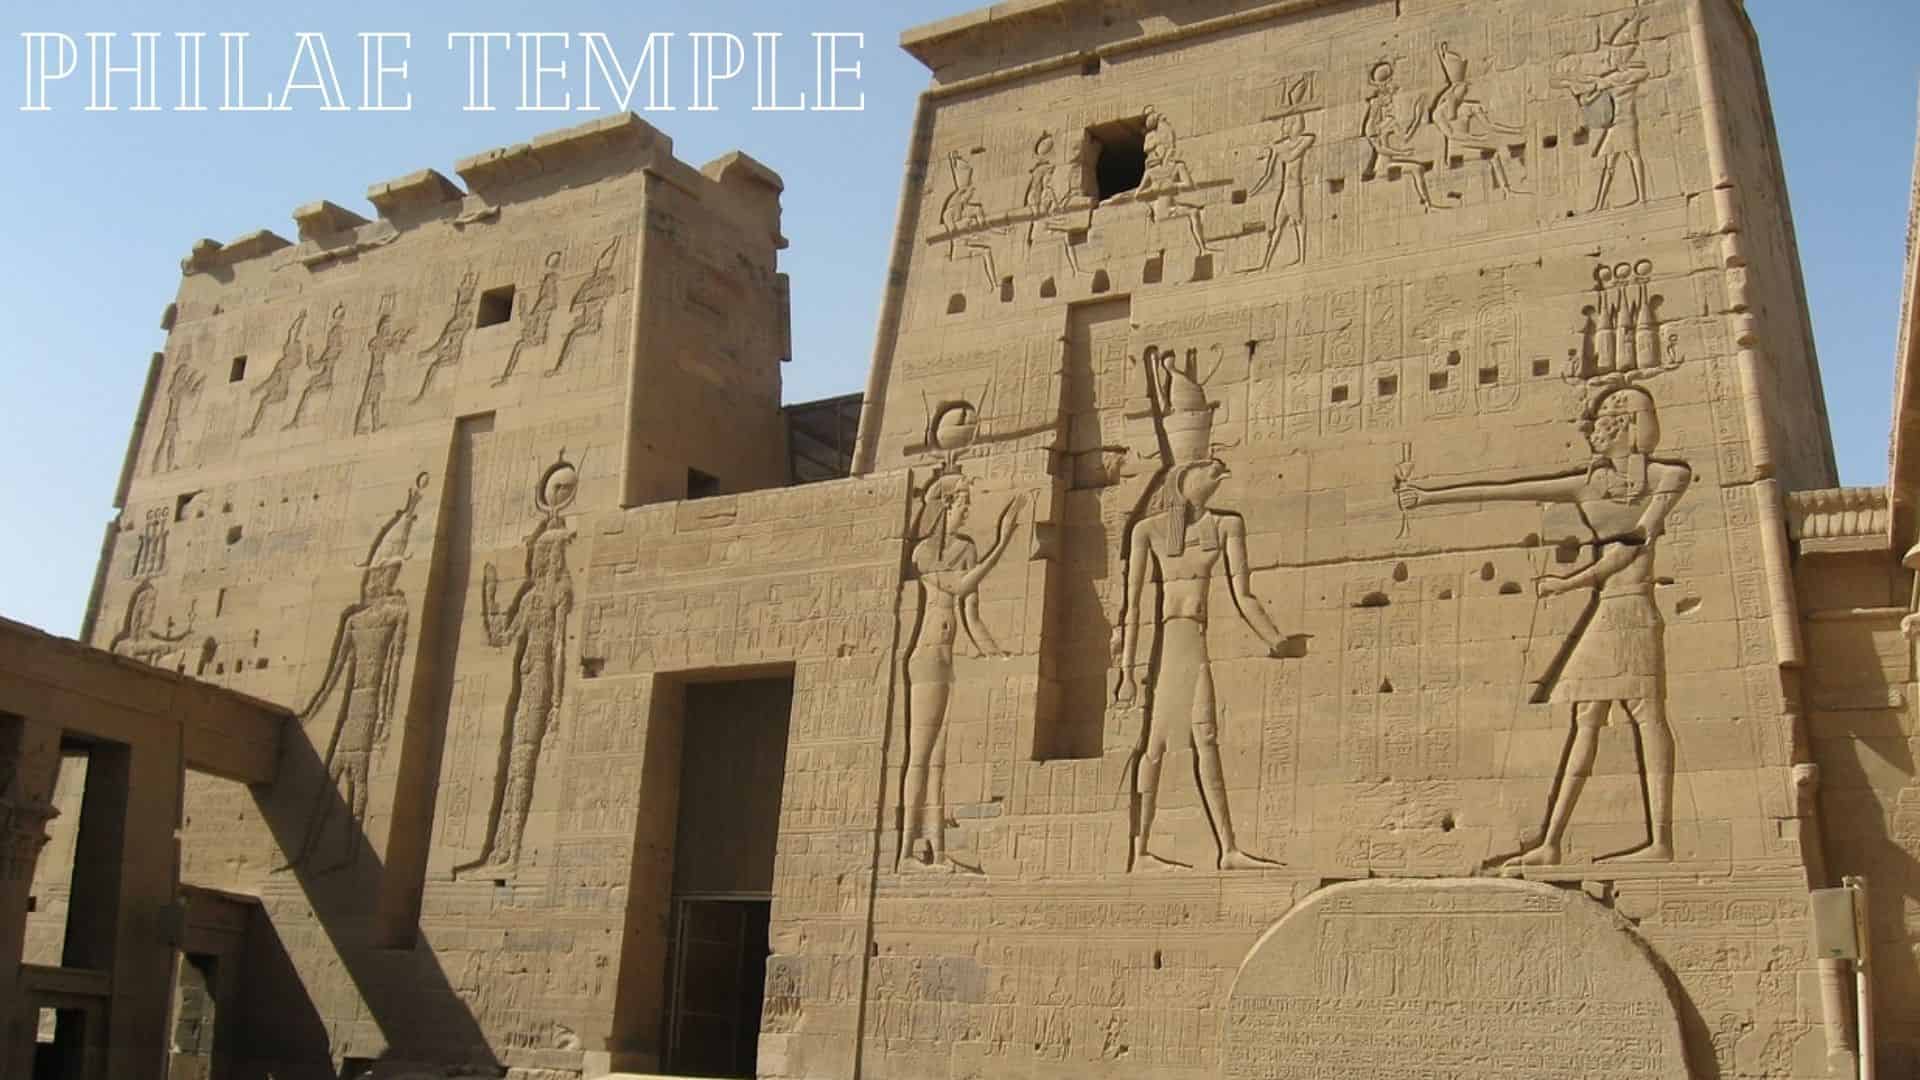 Philae temple in Aswan